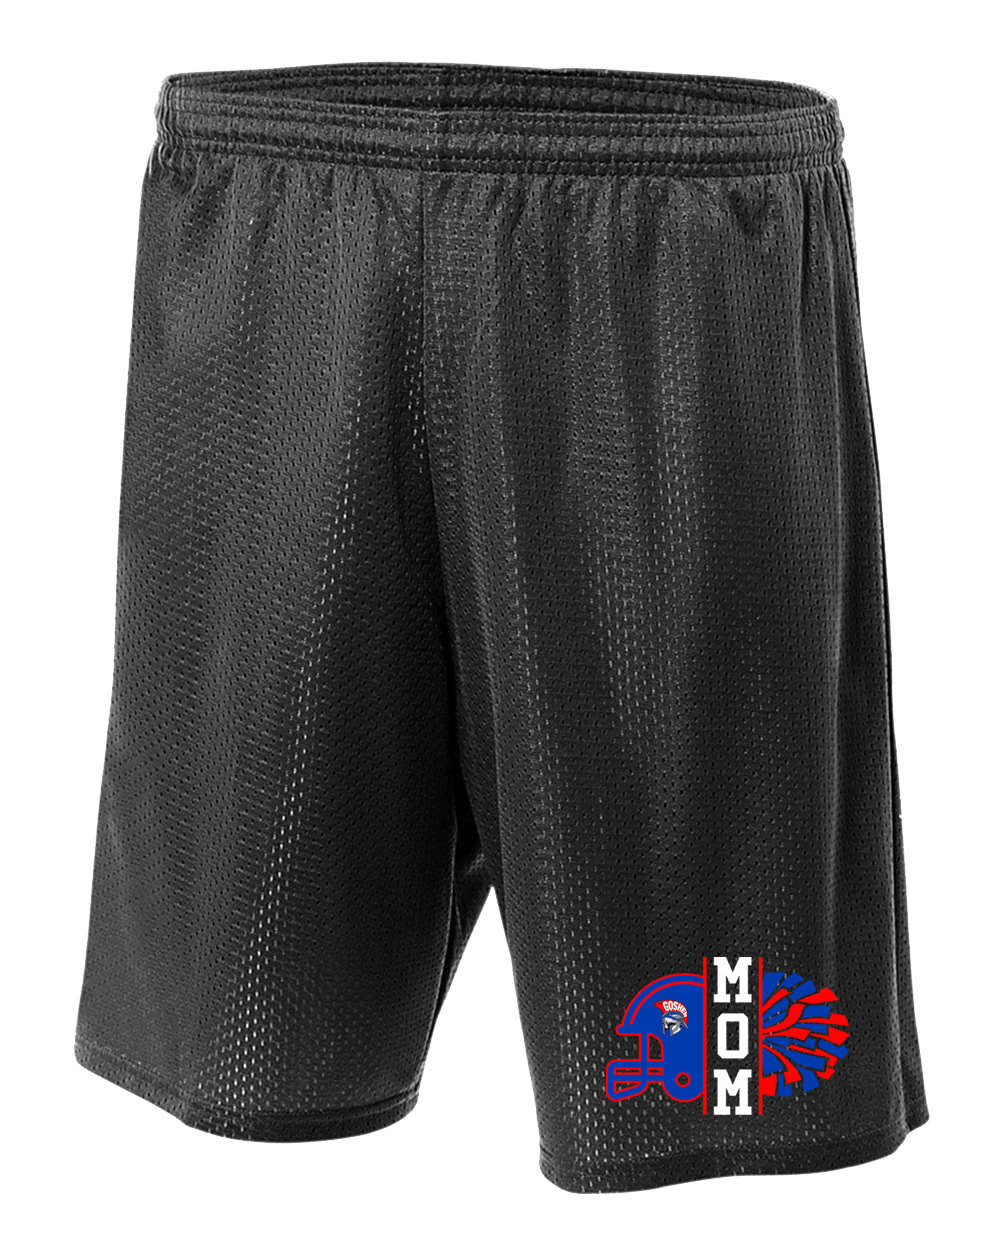 Goshen Cheer Design 7 Shorts